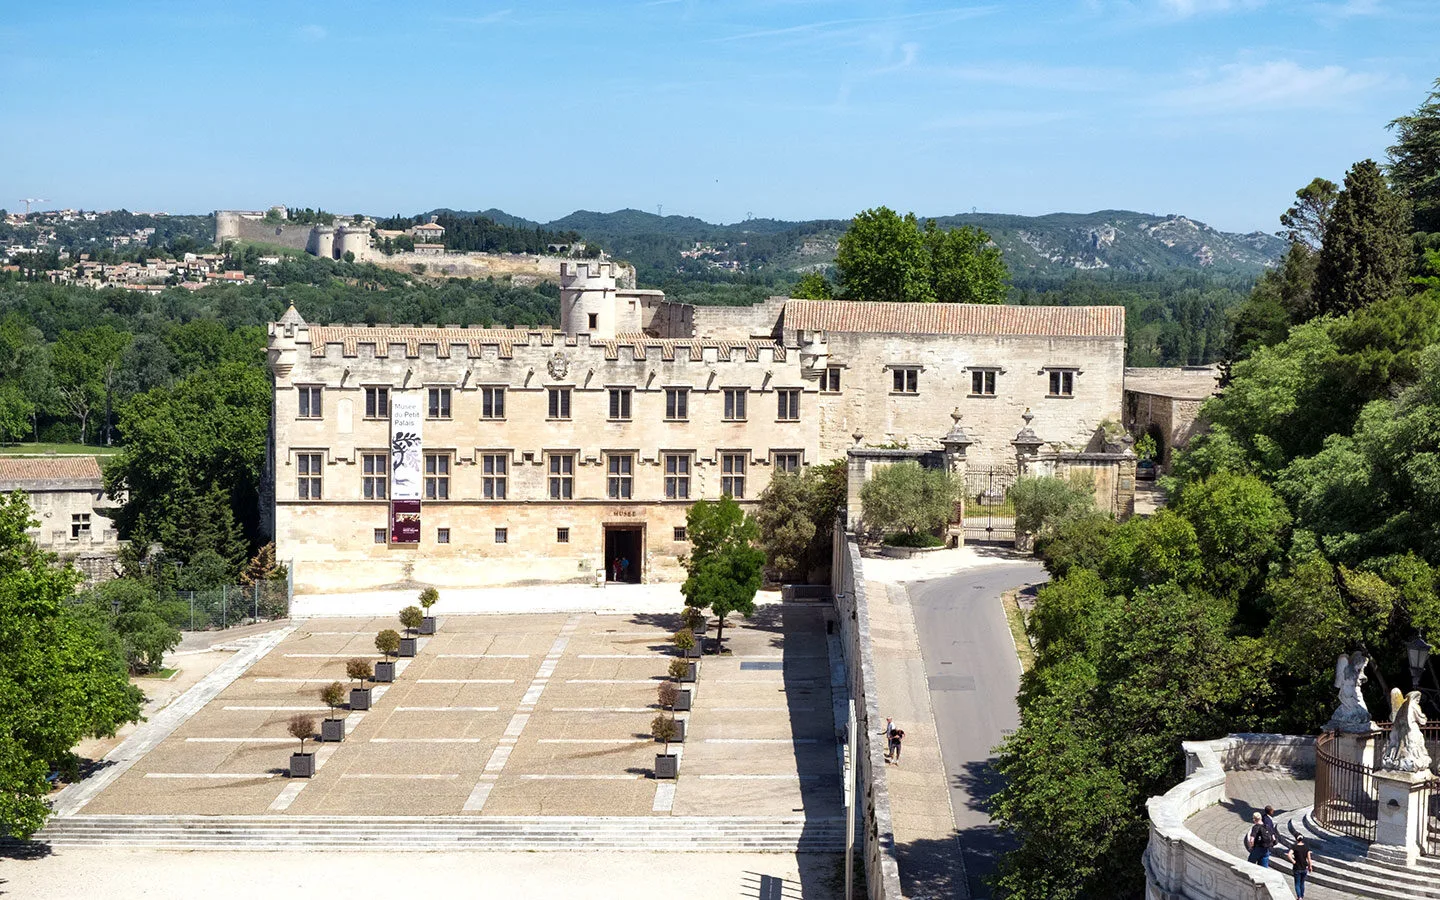 The Musée du Petit Palais art museum in Avignon